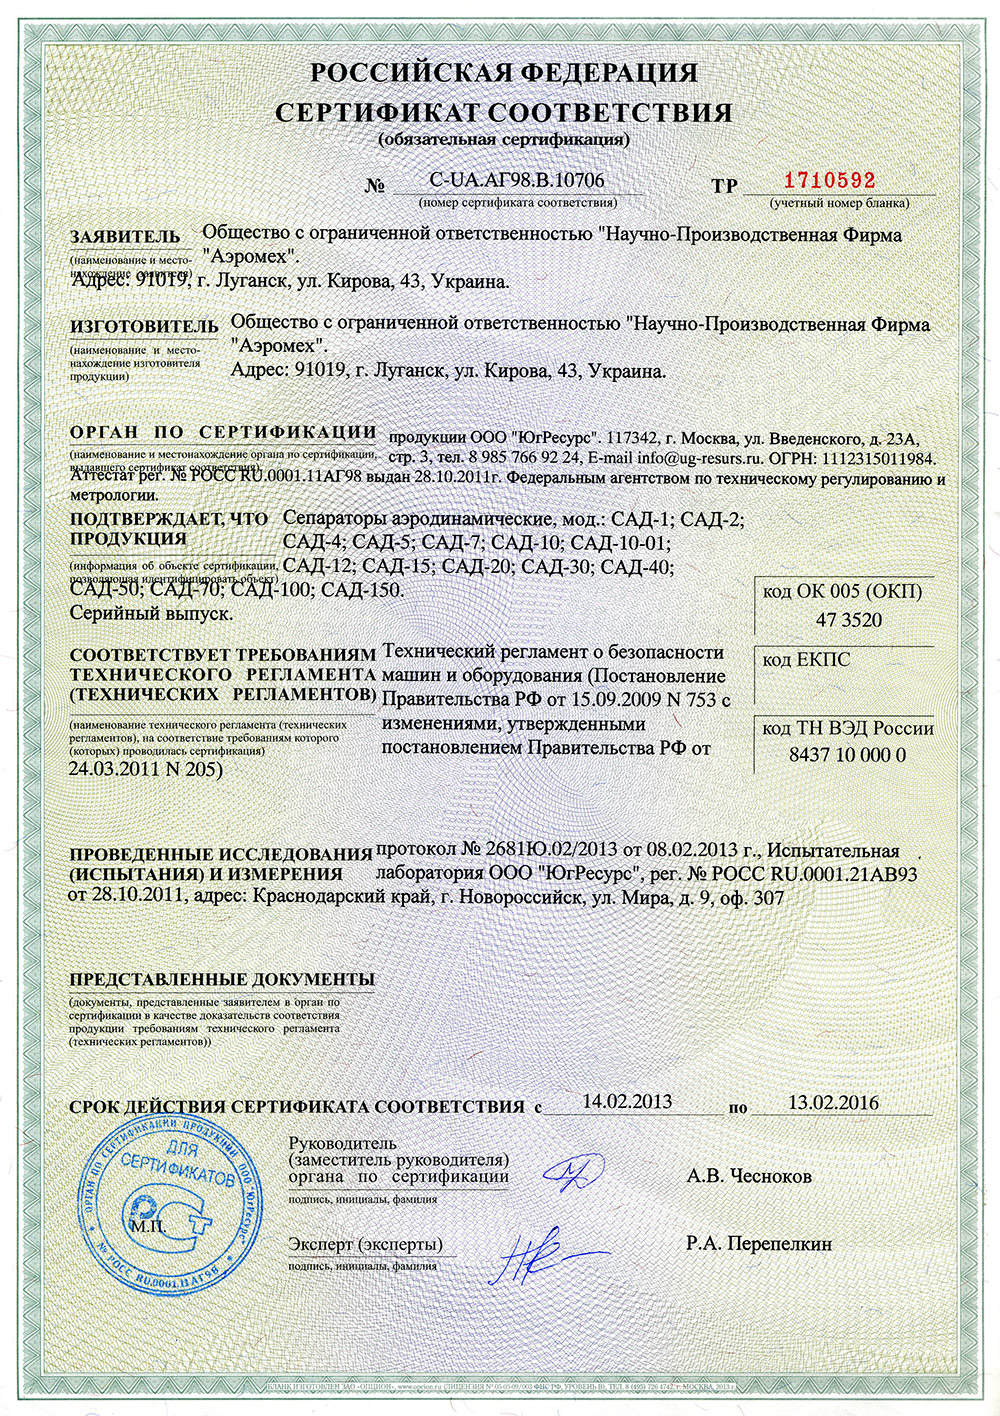 Російський сертифікат відповідності на продукцію сепаратор Аеродинамічний САД сепаратор САД-1, САД-2, САД-4, САД-5, САД-7, САД-10, САД-10-01, САД-12, САД-15, <br /> САД-20, САД-30, САД-40, САД-50, САД-70, САД-100, САД-150